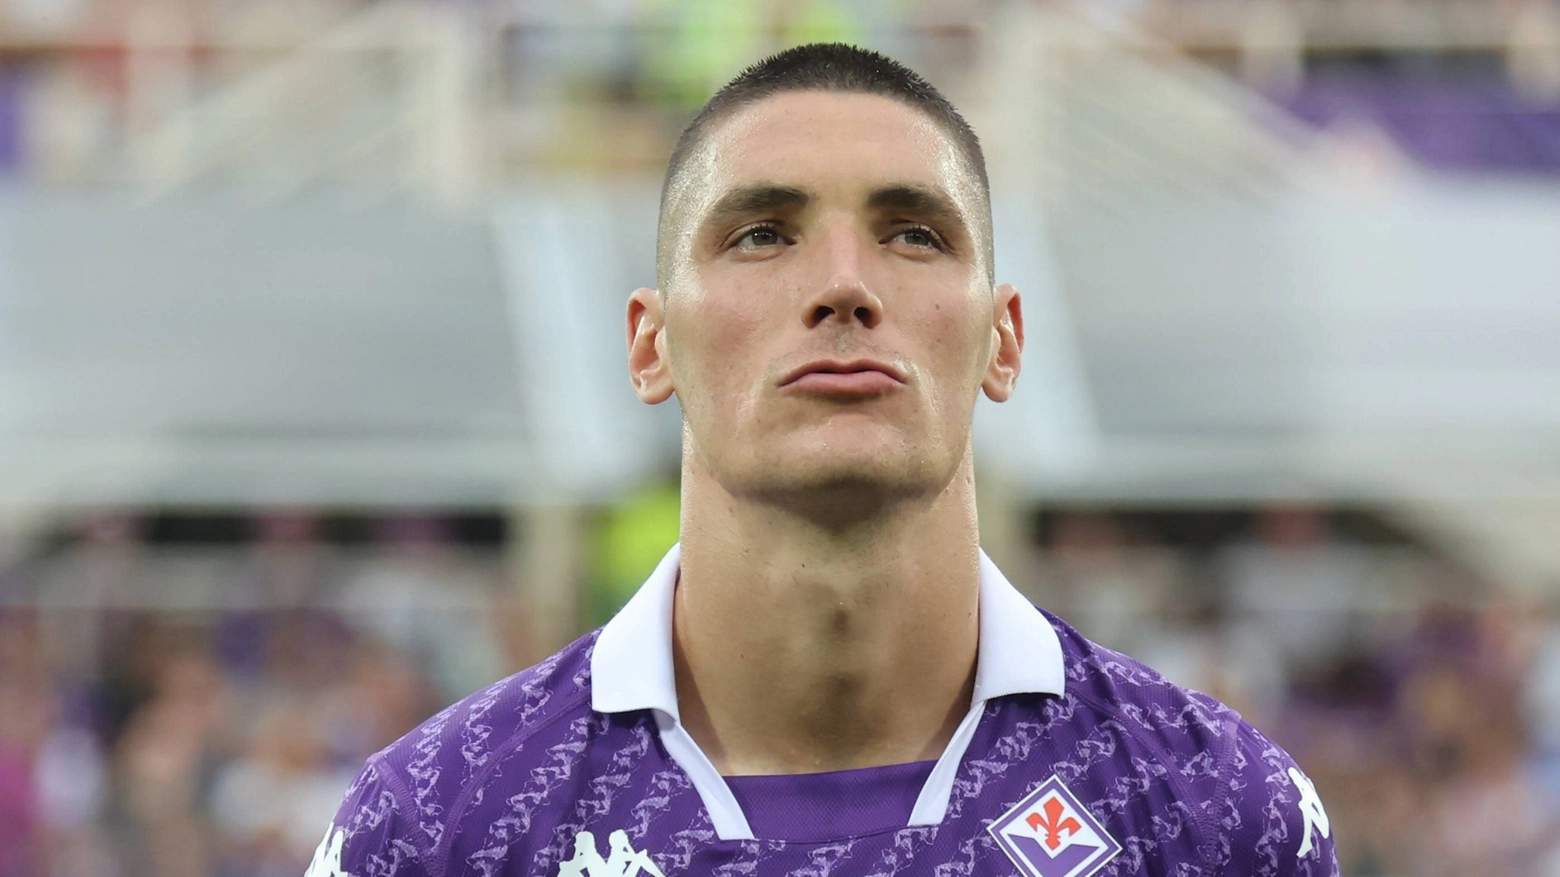 Il difensore serbo a un passo dall'approdo in Premier League. Mancano solo le formalità per il suo addio alla Fiorentina dopo sette stagioni